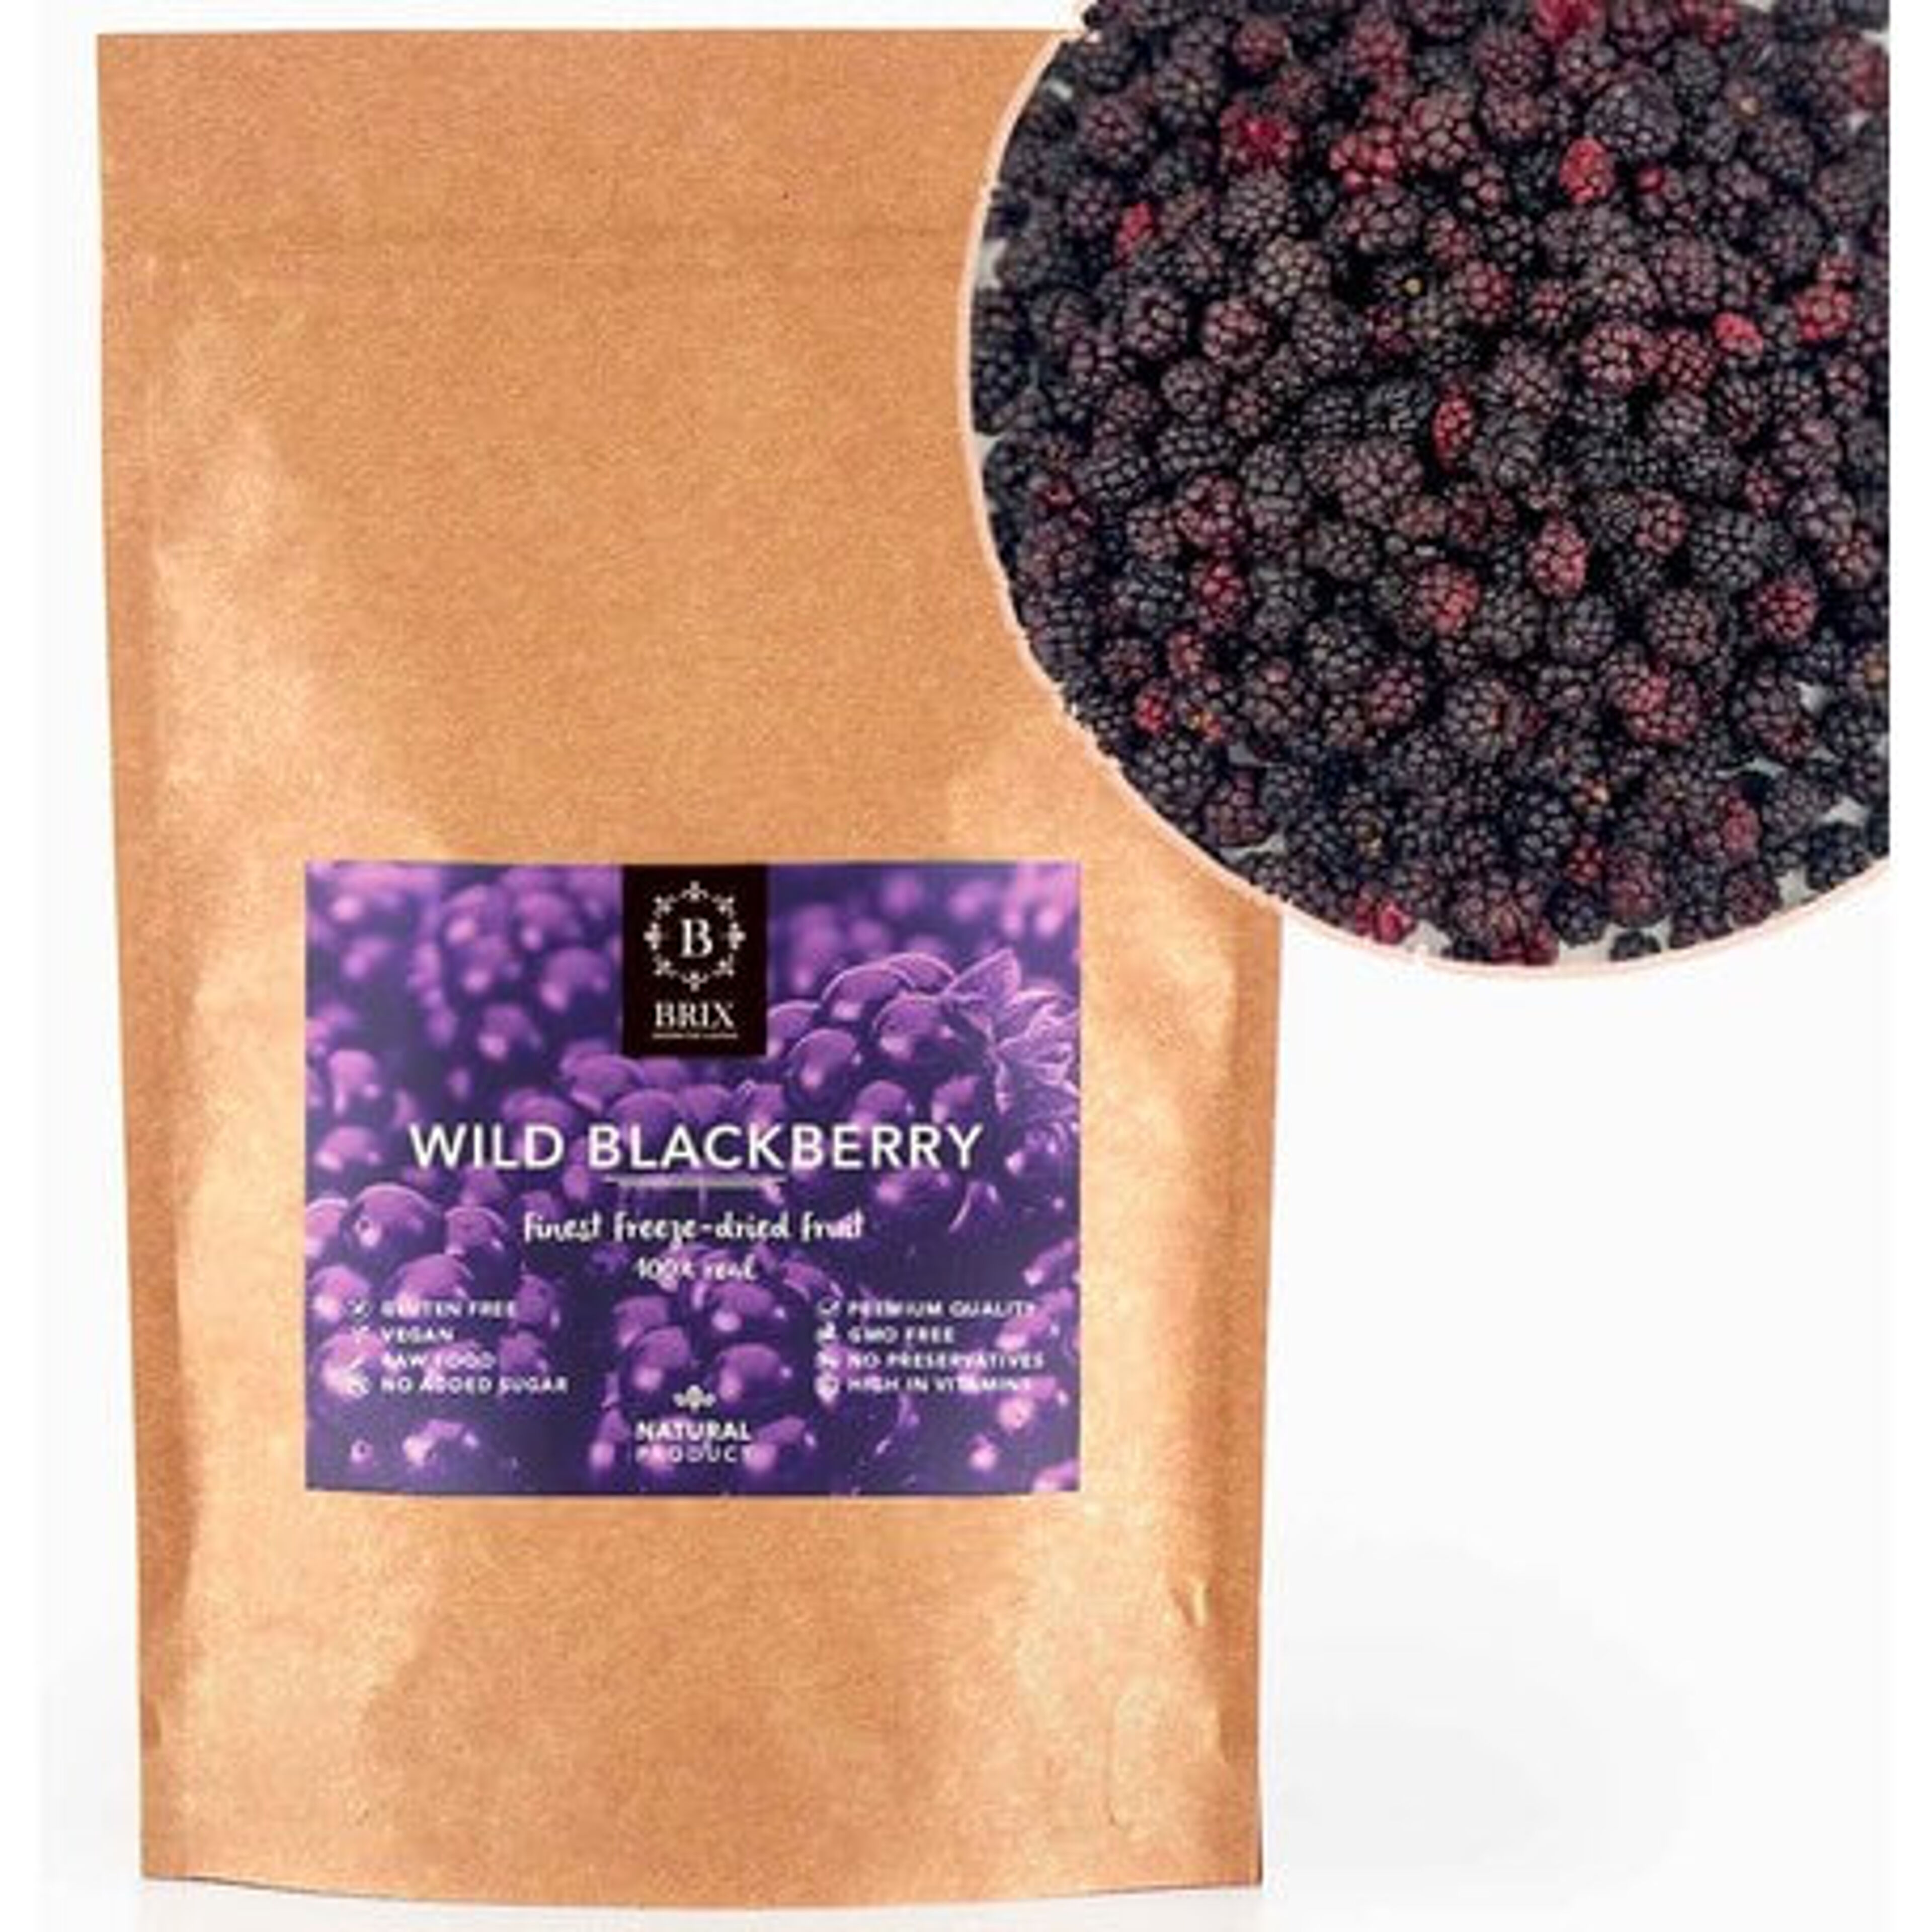 Brix Freeze-dried wild blackberry